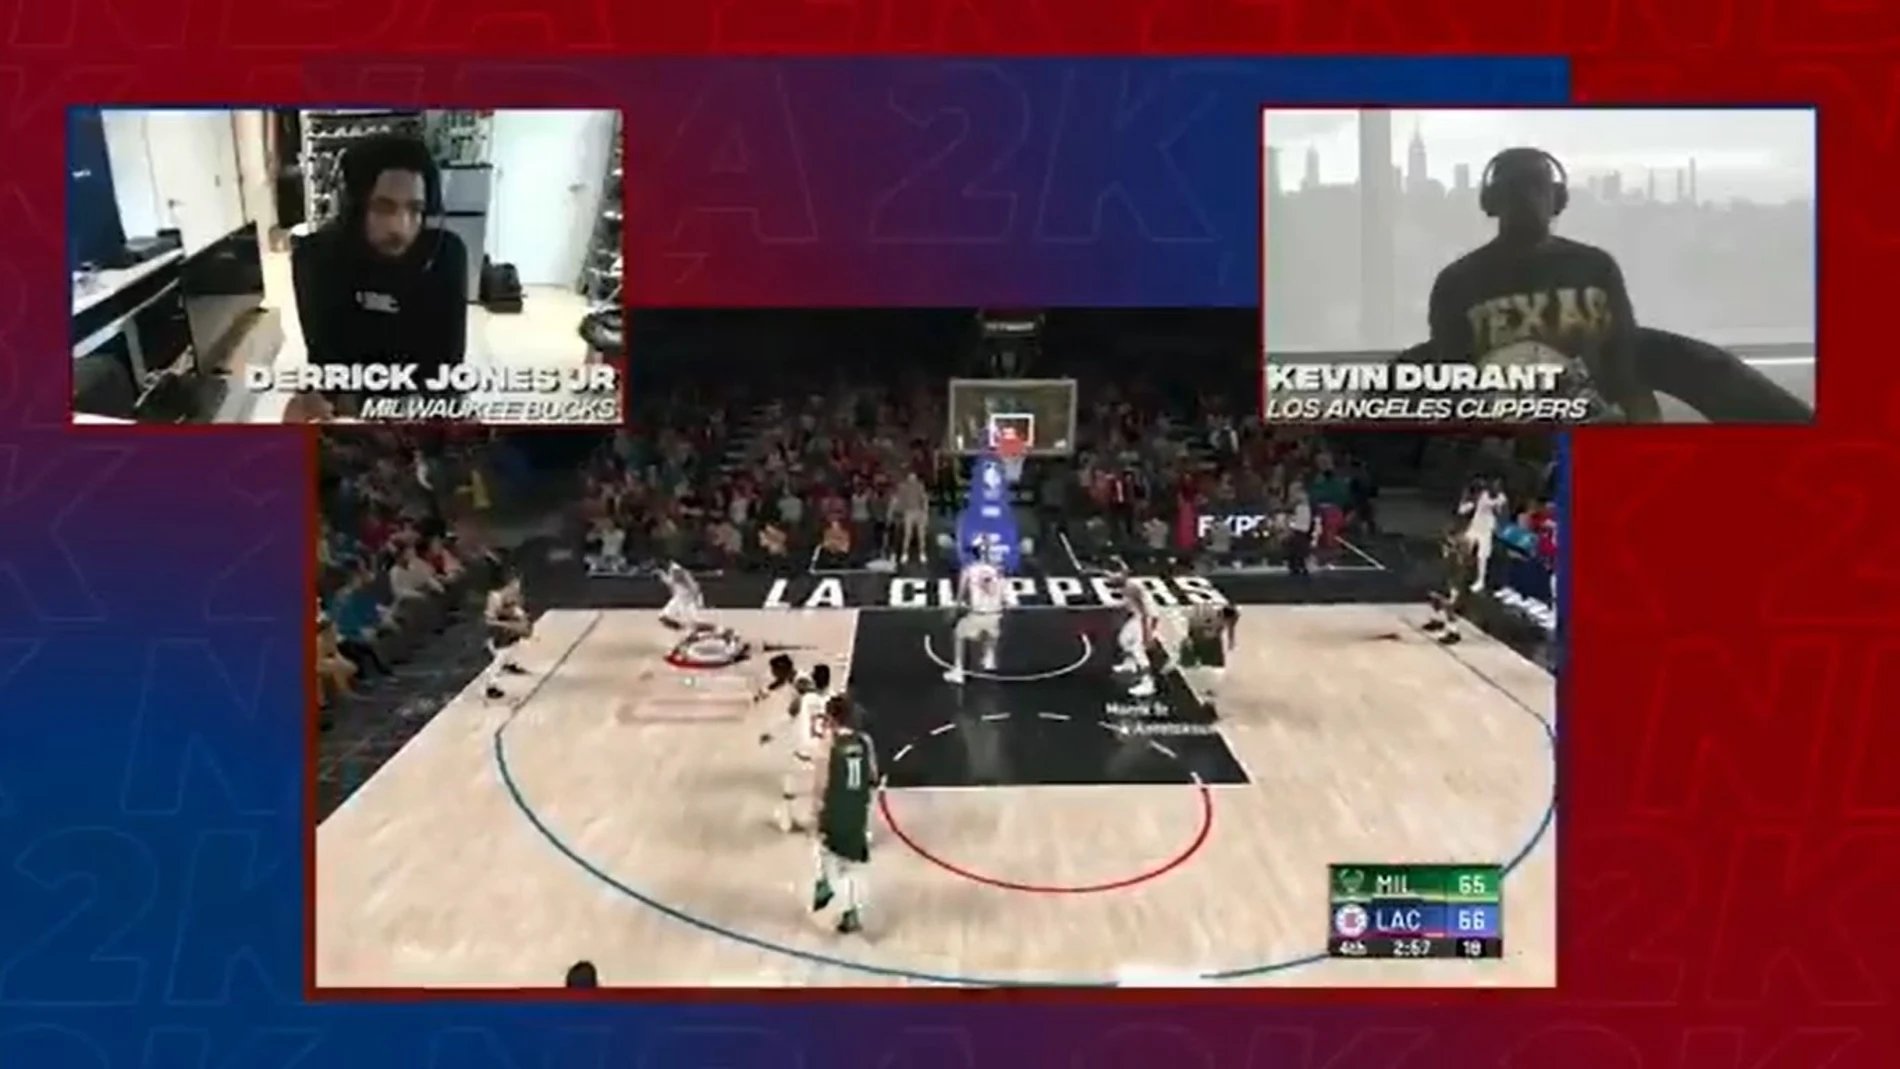 Baloncesto/NBA.- Derrick Jones Jr. elimina a Kevin Durant en el estreno del torneo de NBA 2K